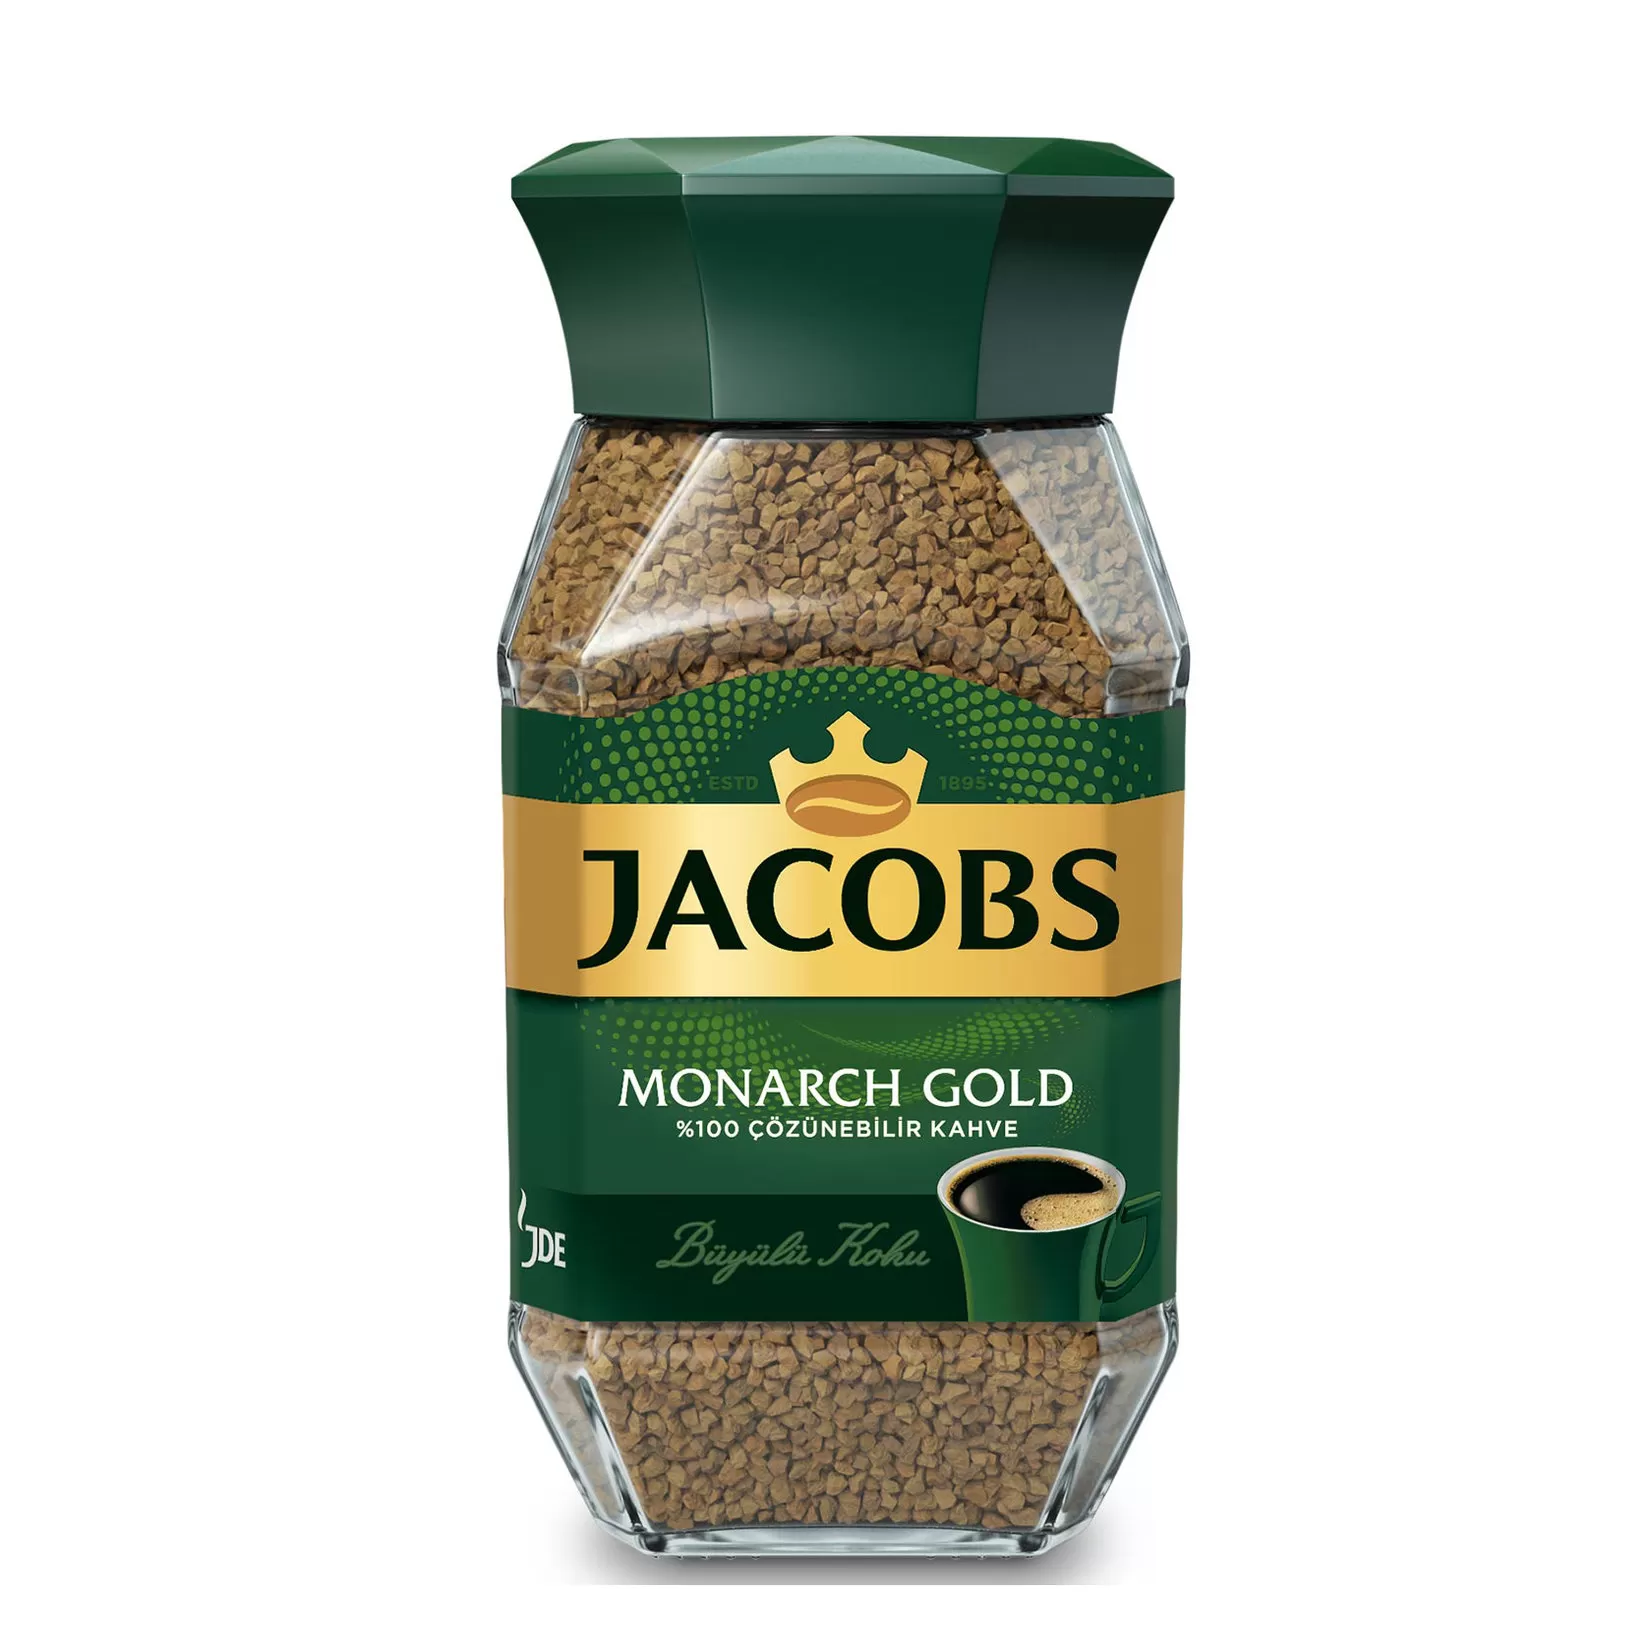 Jacobs Monarch Gold Kahve 2x100 gr Kavonoz